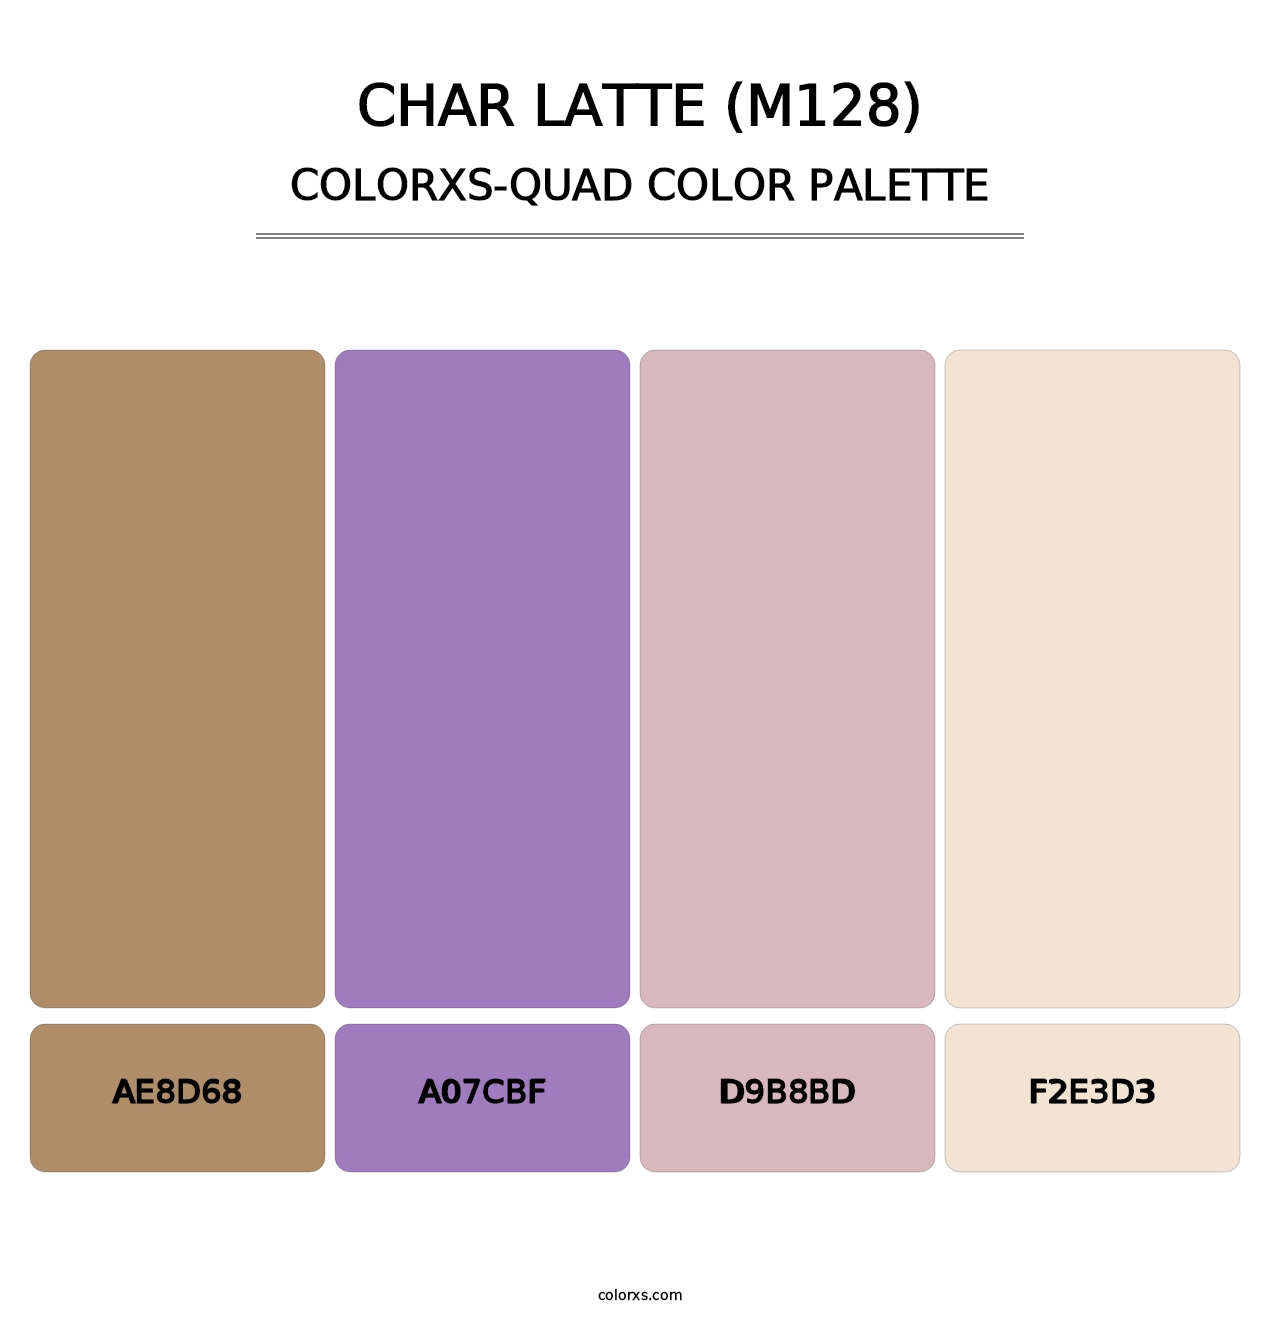 Char Latte (M128) - Colorxs Quad Palette